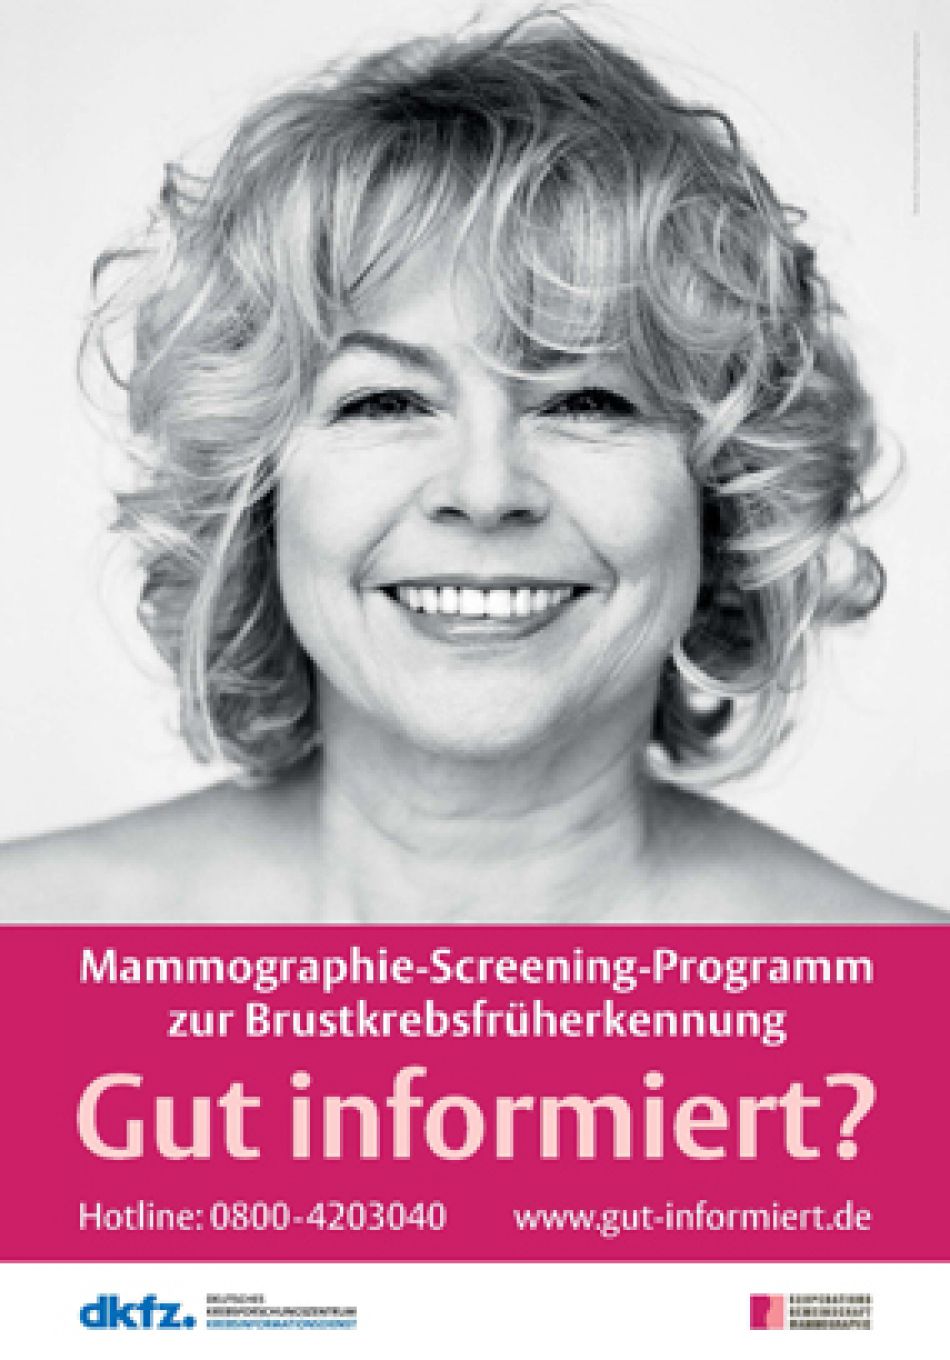 Plakat "Gut informiert?" © Kooperationsgemeinschaft Mammographie